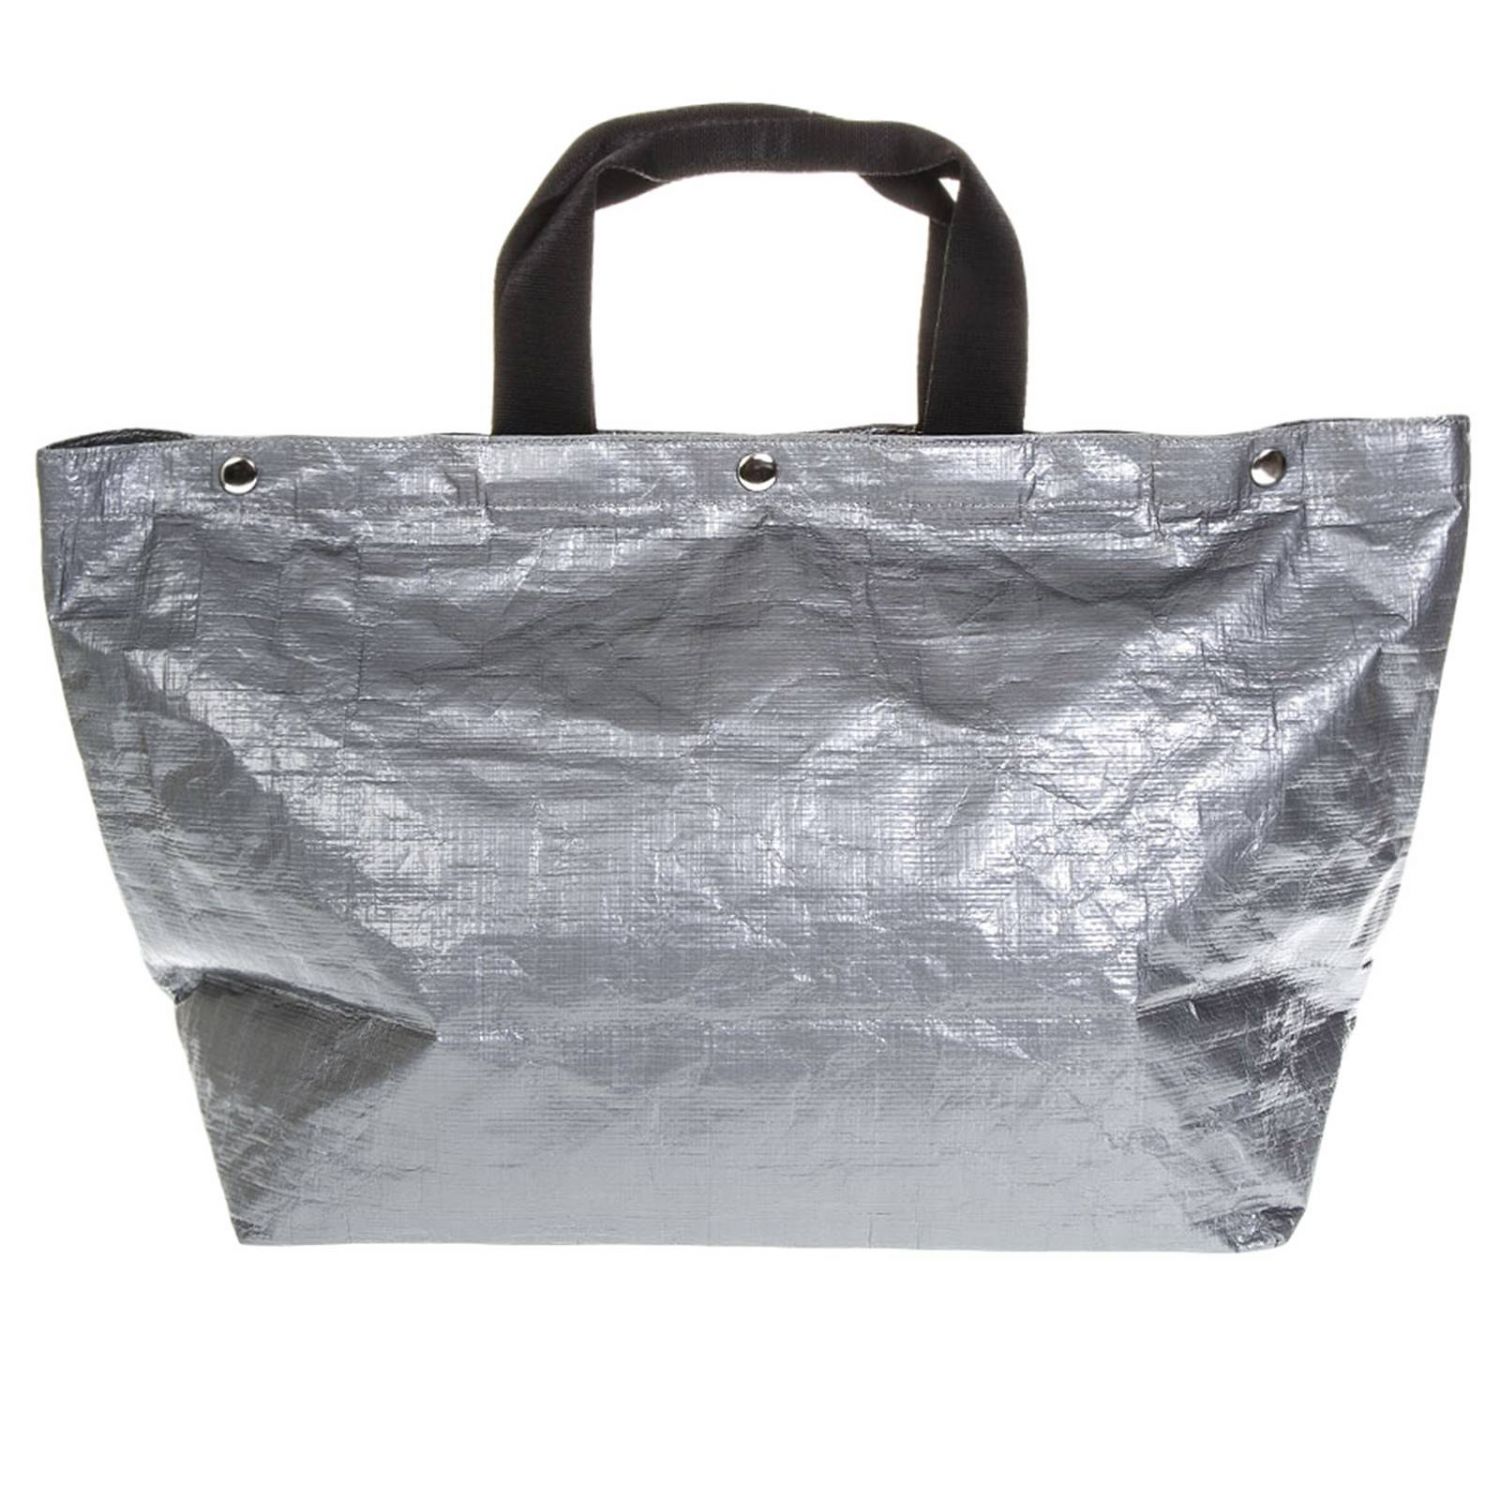 Dsquared2 Outlet: Handbag women - Silver | Handbag Dsquared2 ...